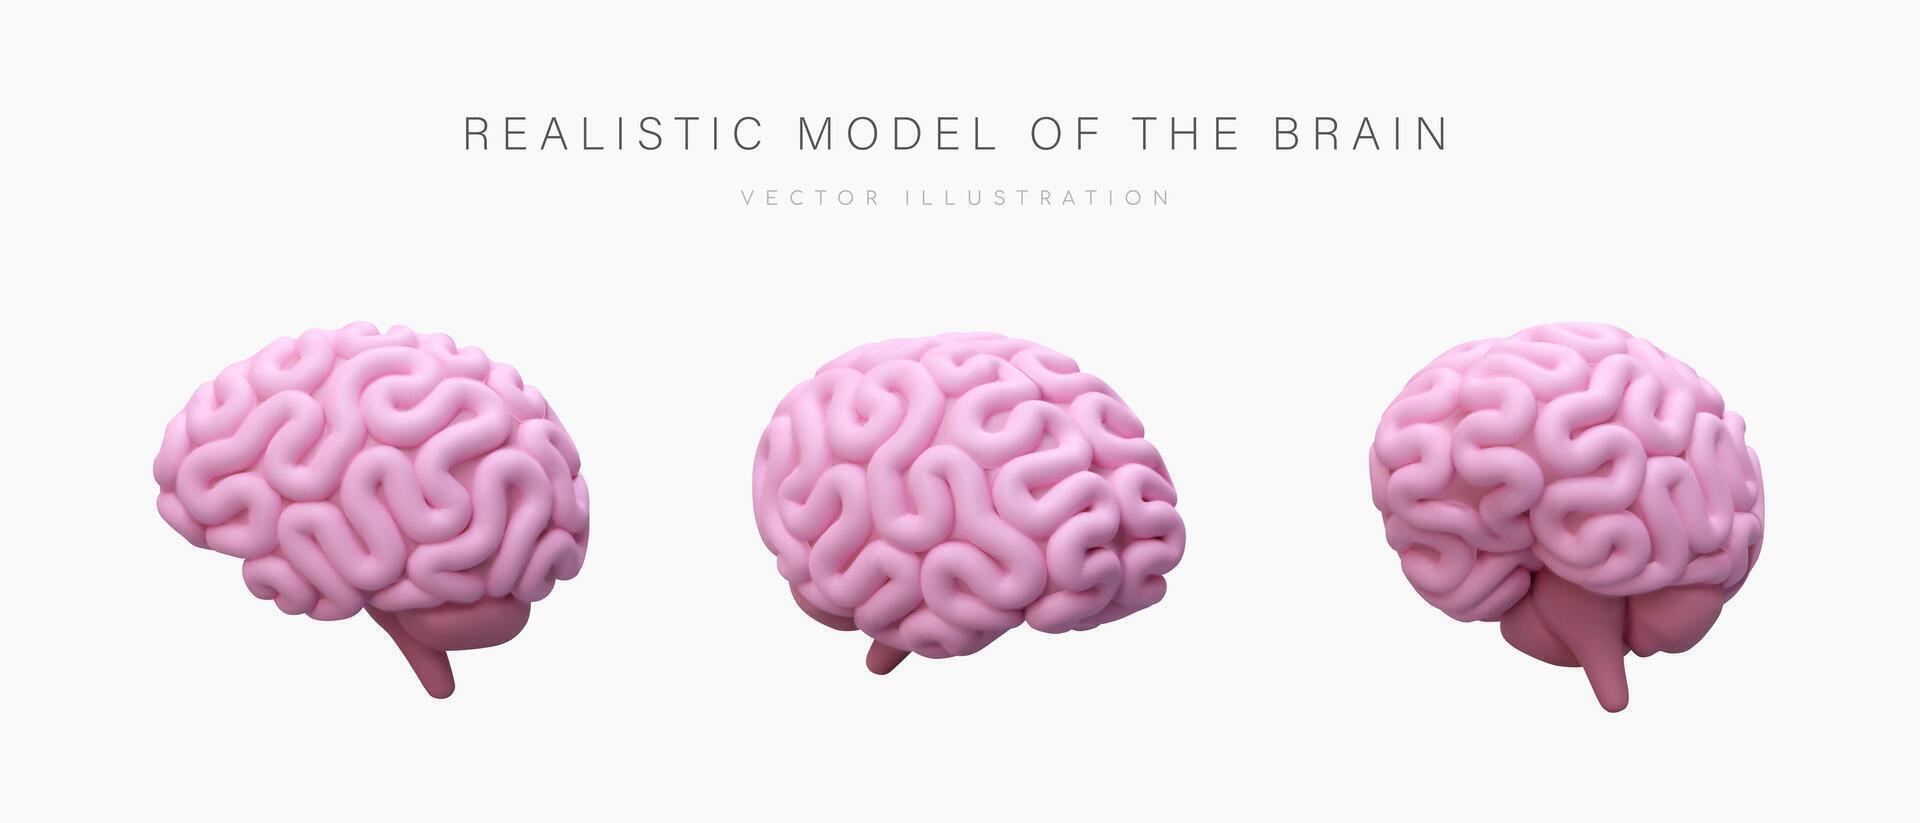 realistisk modell av mänsklig hjärna. rosa stora hjärnan, se från annorlunda sidor vektor